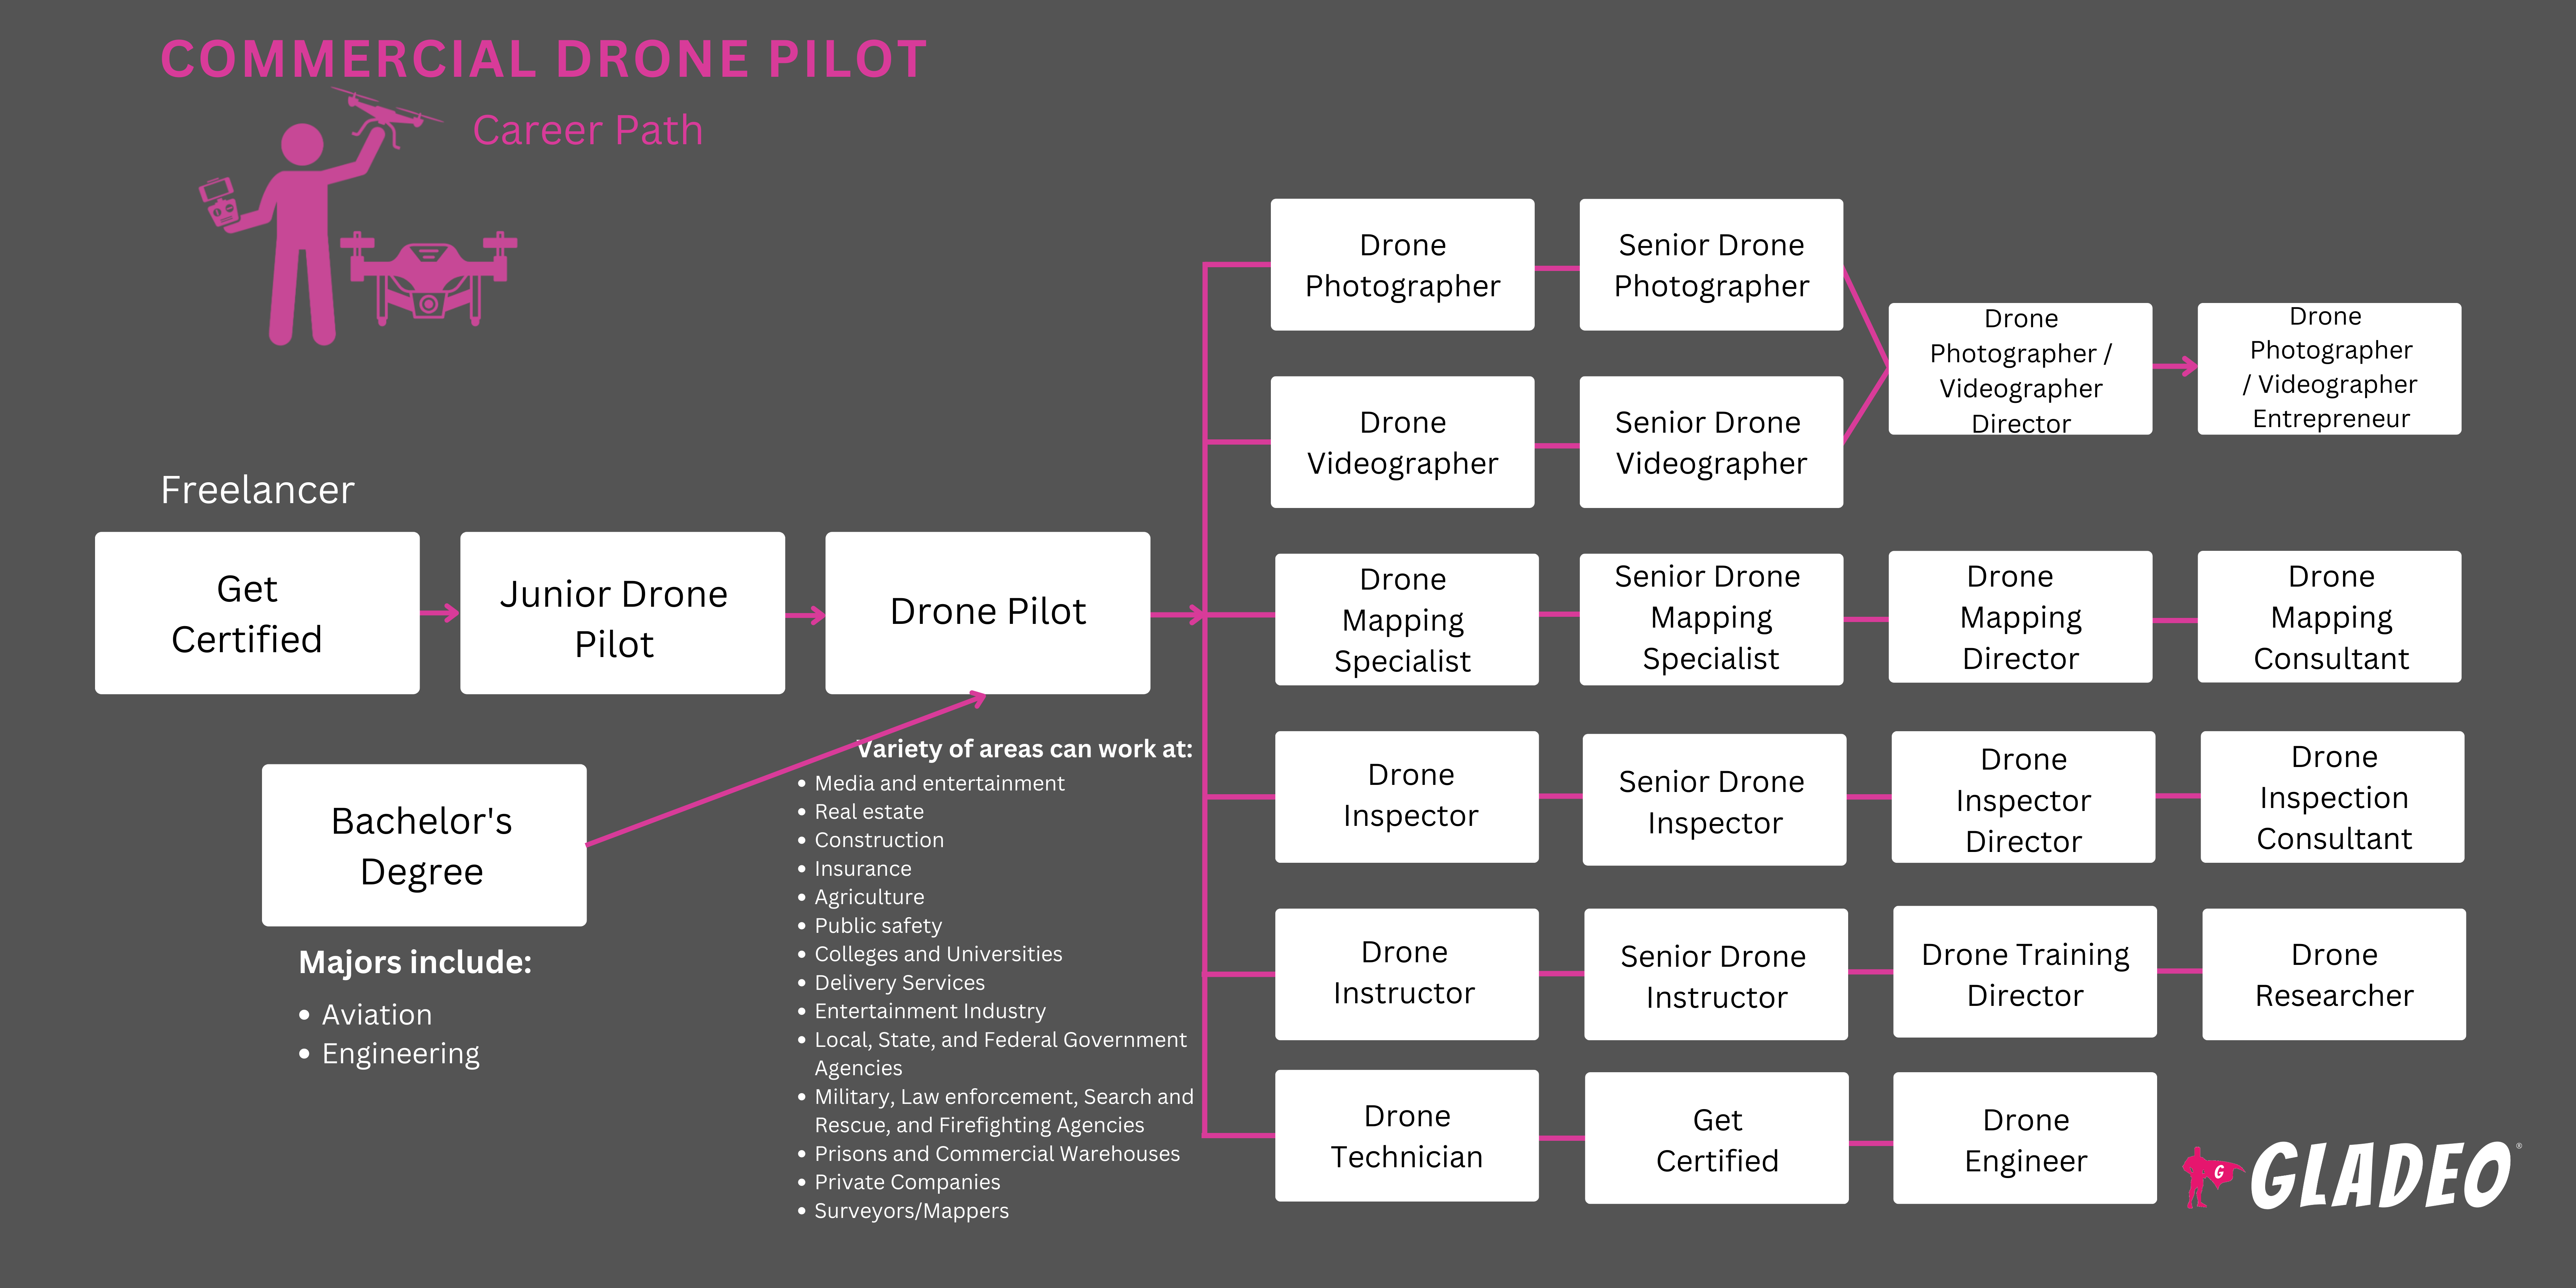 Hoja de ruta para pilotos de drones comerciales